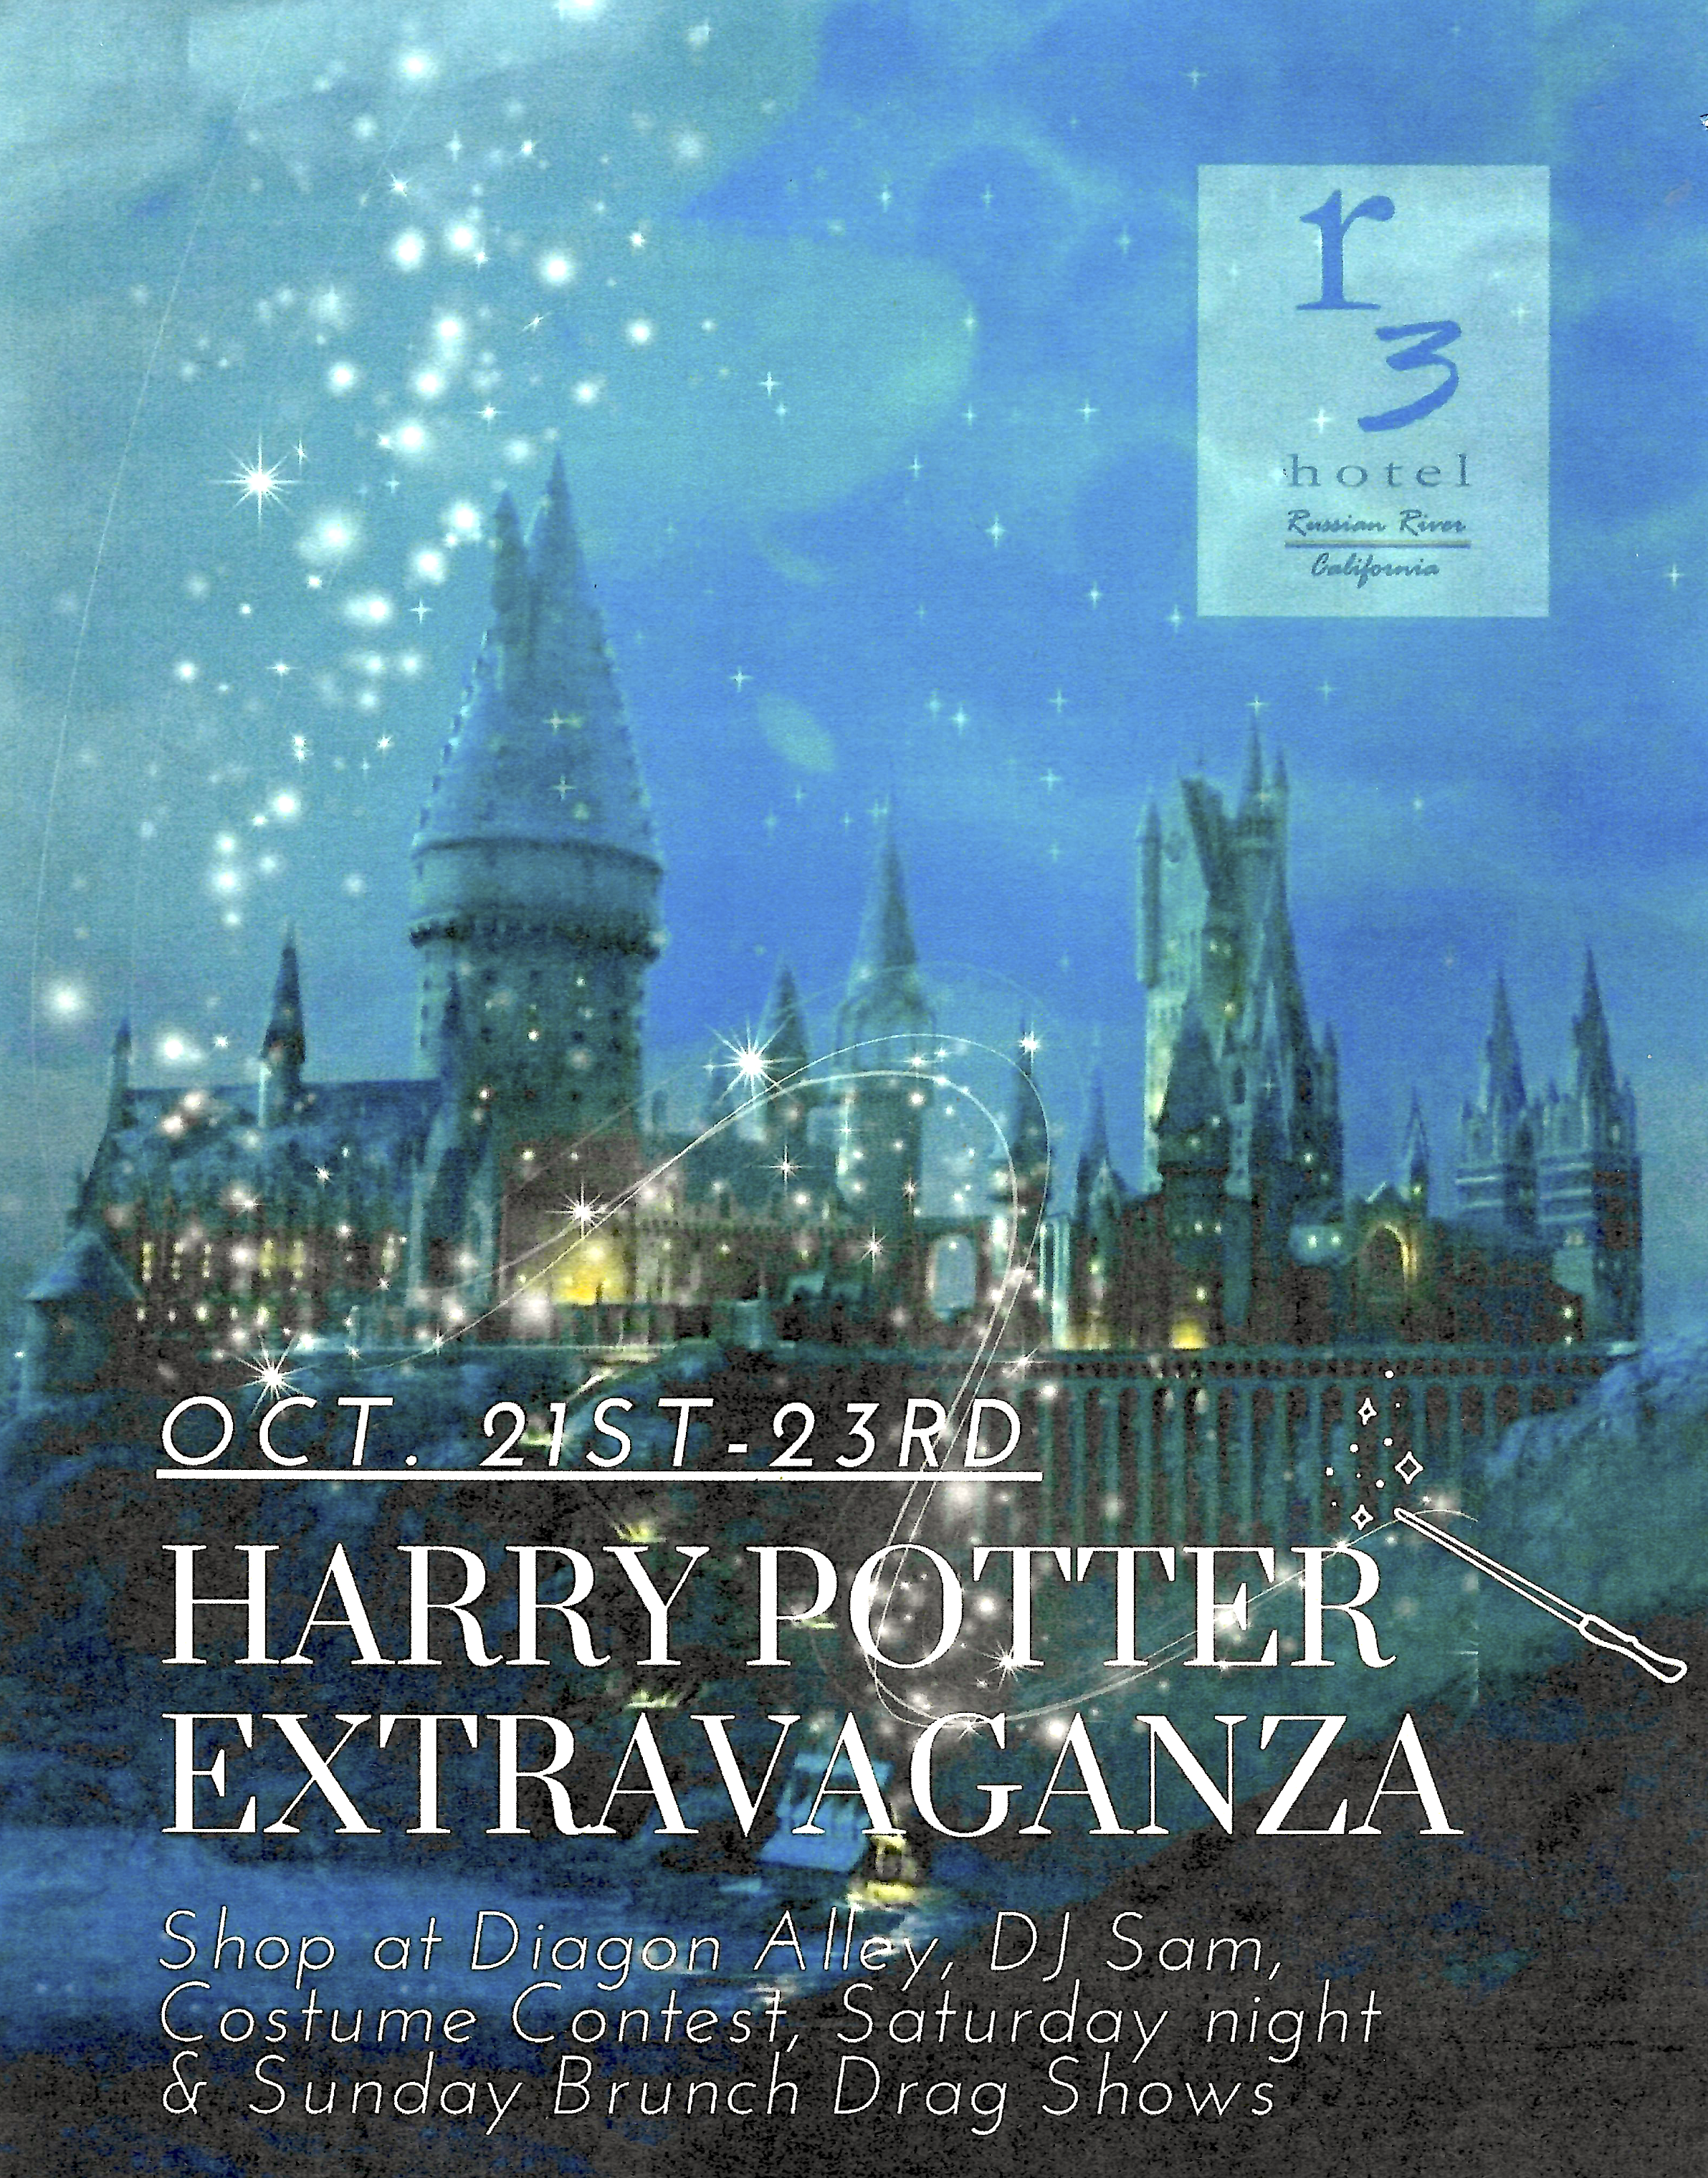 Harry Potter Extravaganza